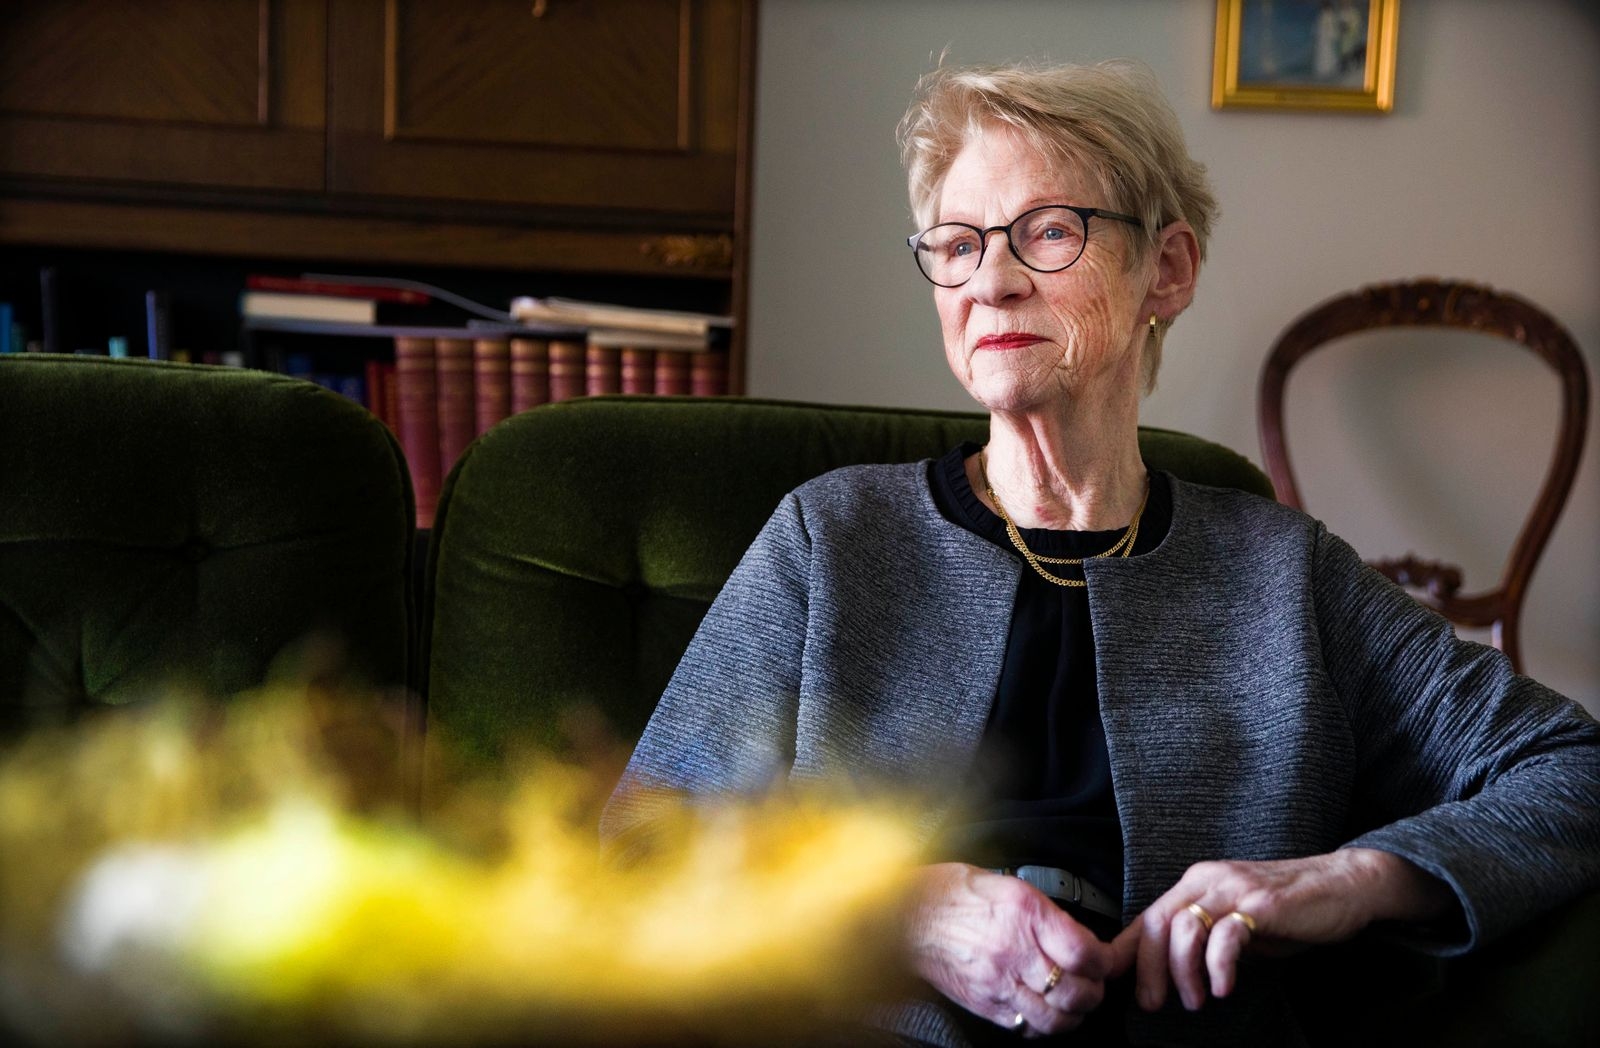 Ann-Margret kände sig väldigt redo att avsäga sig rollen som ordförande i Ulricehamns guideförening: ”Jag är fullt trygg med Elisabeth Frick på den posten”, säger hon.